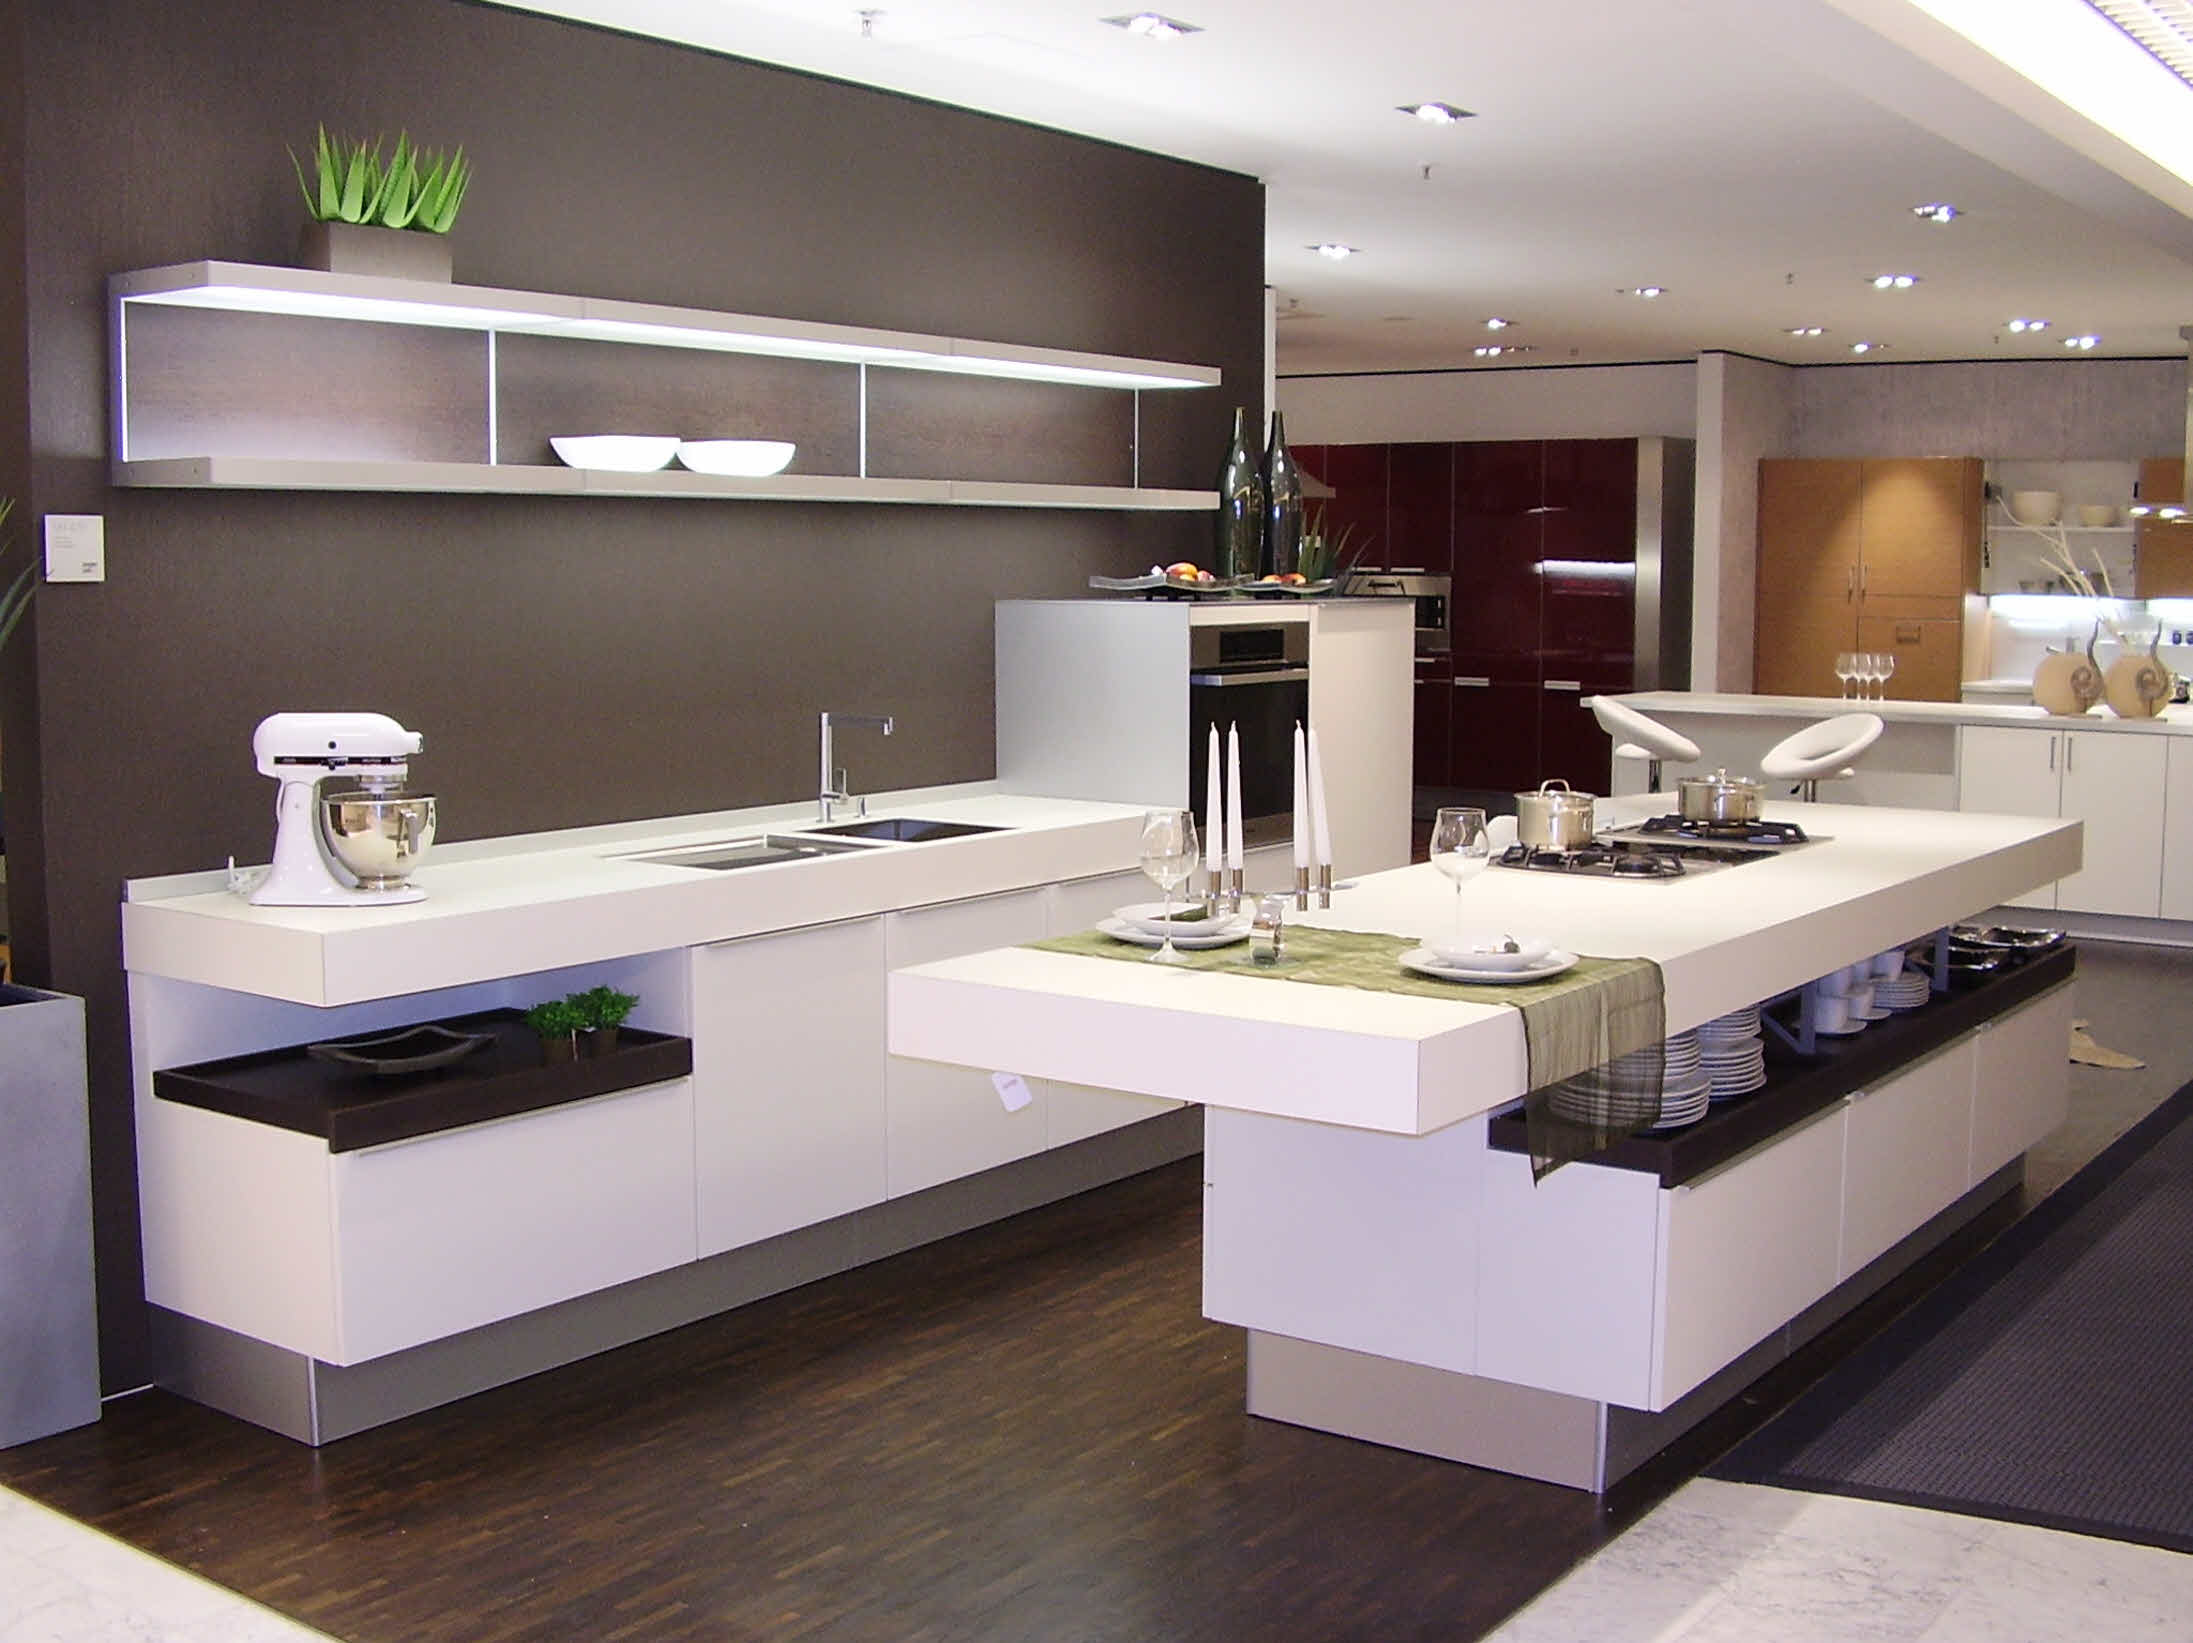 现代简约风格厨房橱柜设计——中岛台的灯光效果对整体的影响